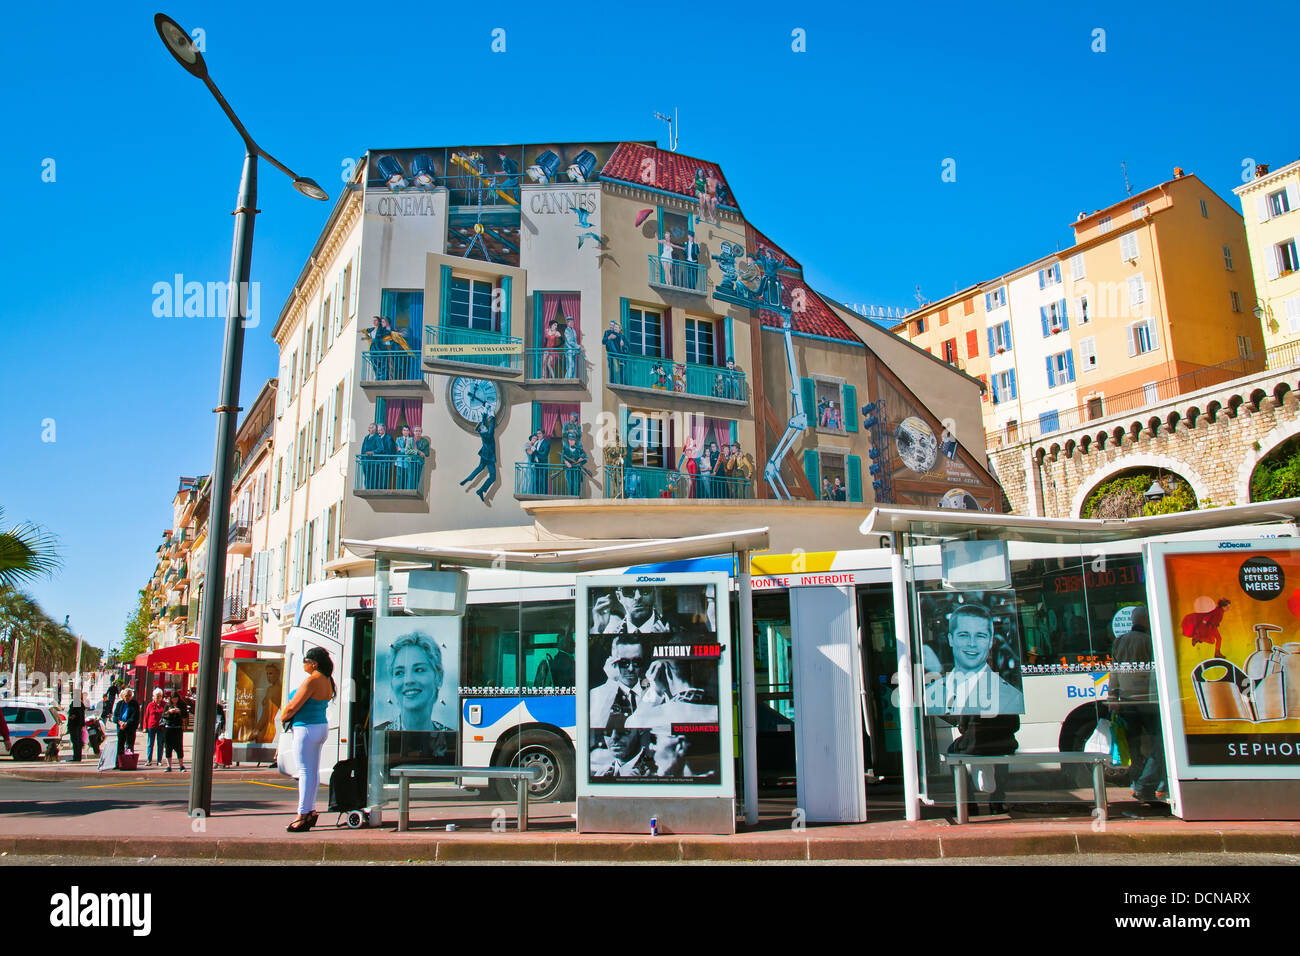 Cannes Festival аdvertising auf dem Gebäude, Haltestellen, Cannes, Côte d'Azur, Frankreich. Stockfoto